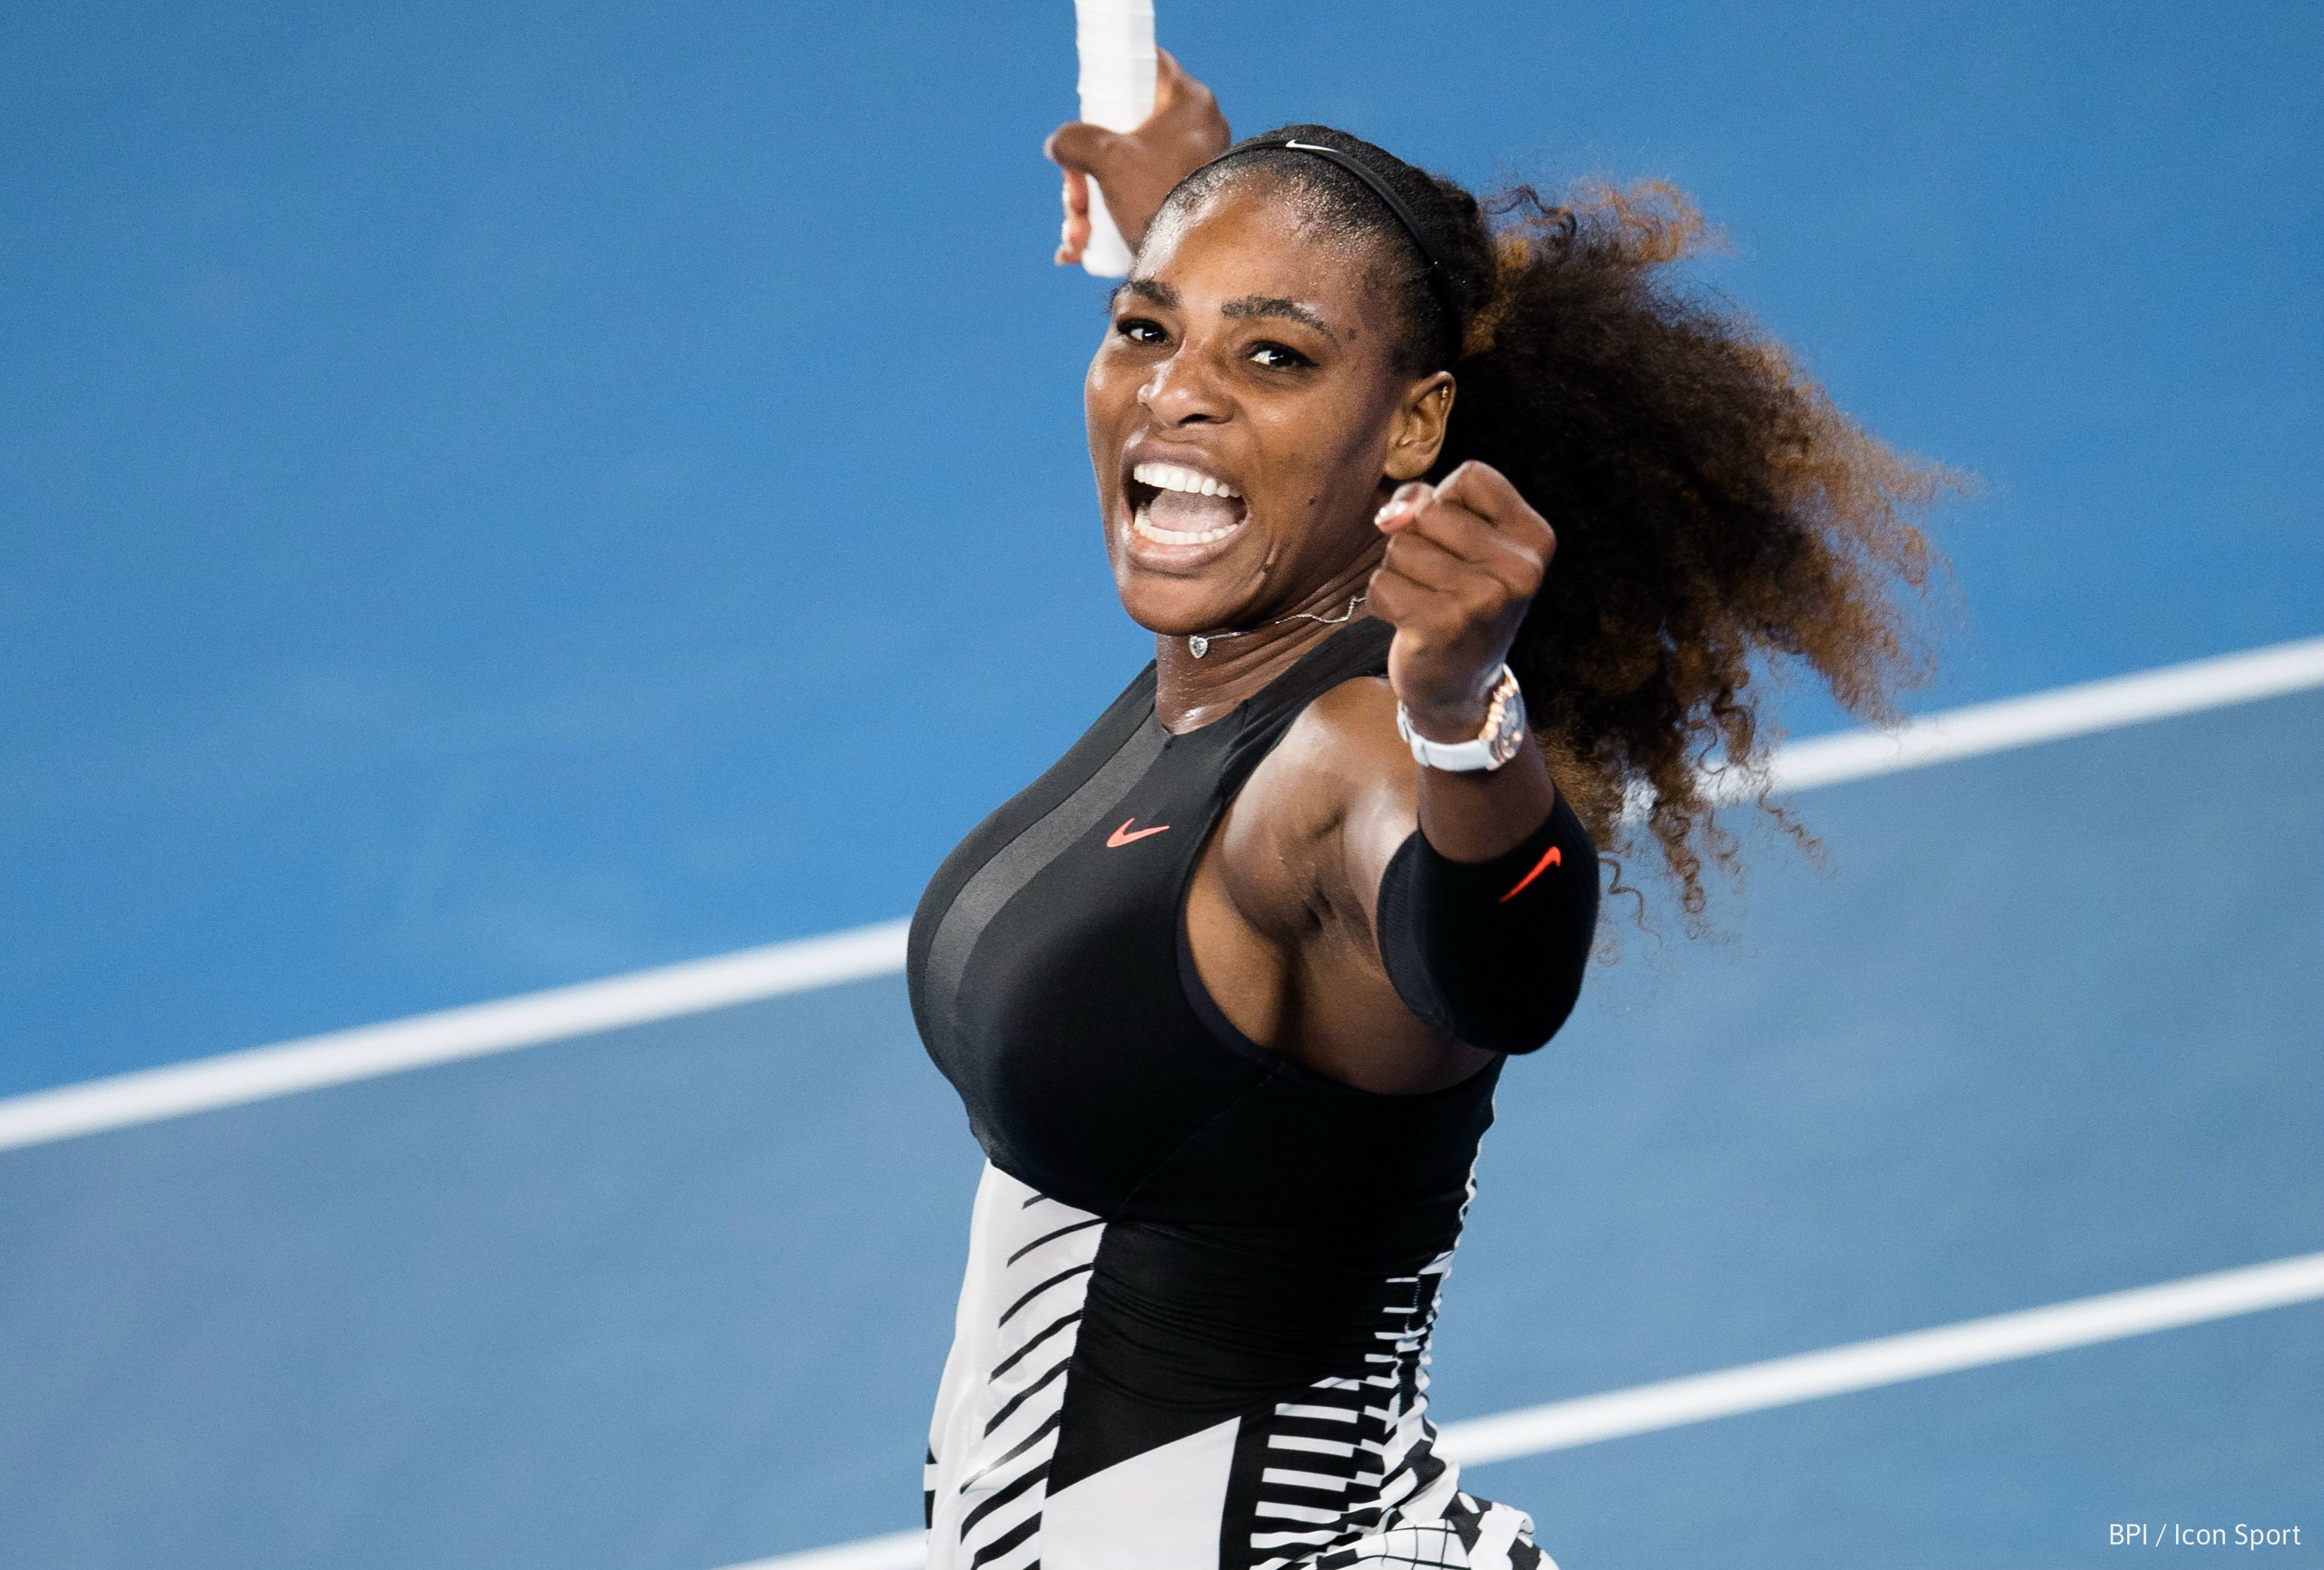 20-01-2017 - Serena Williams - BPI Icon Sport